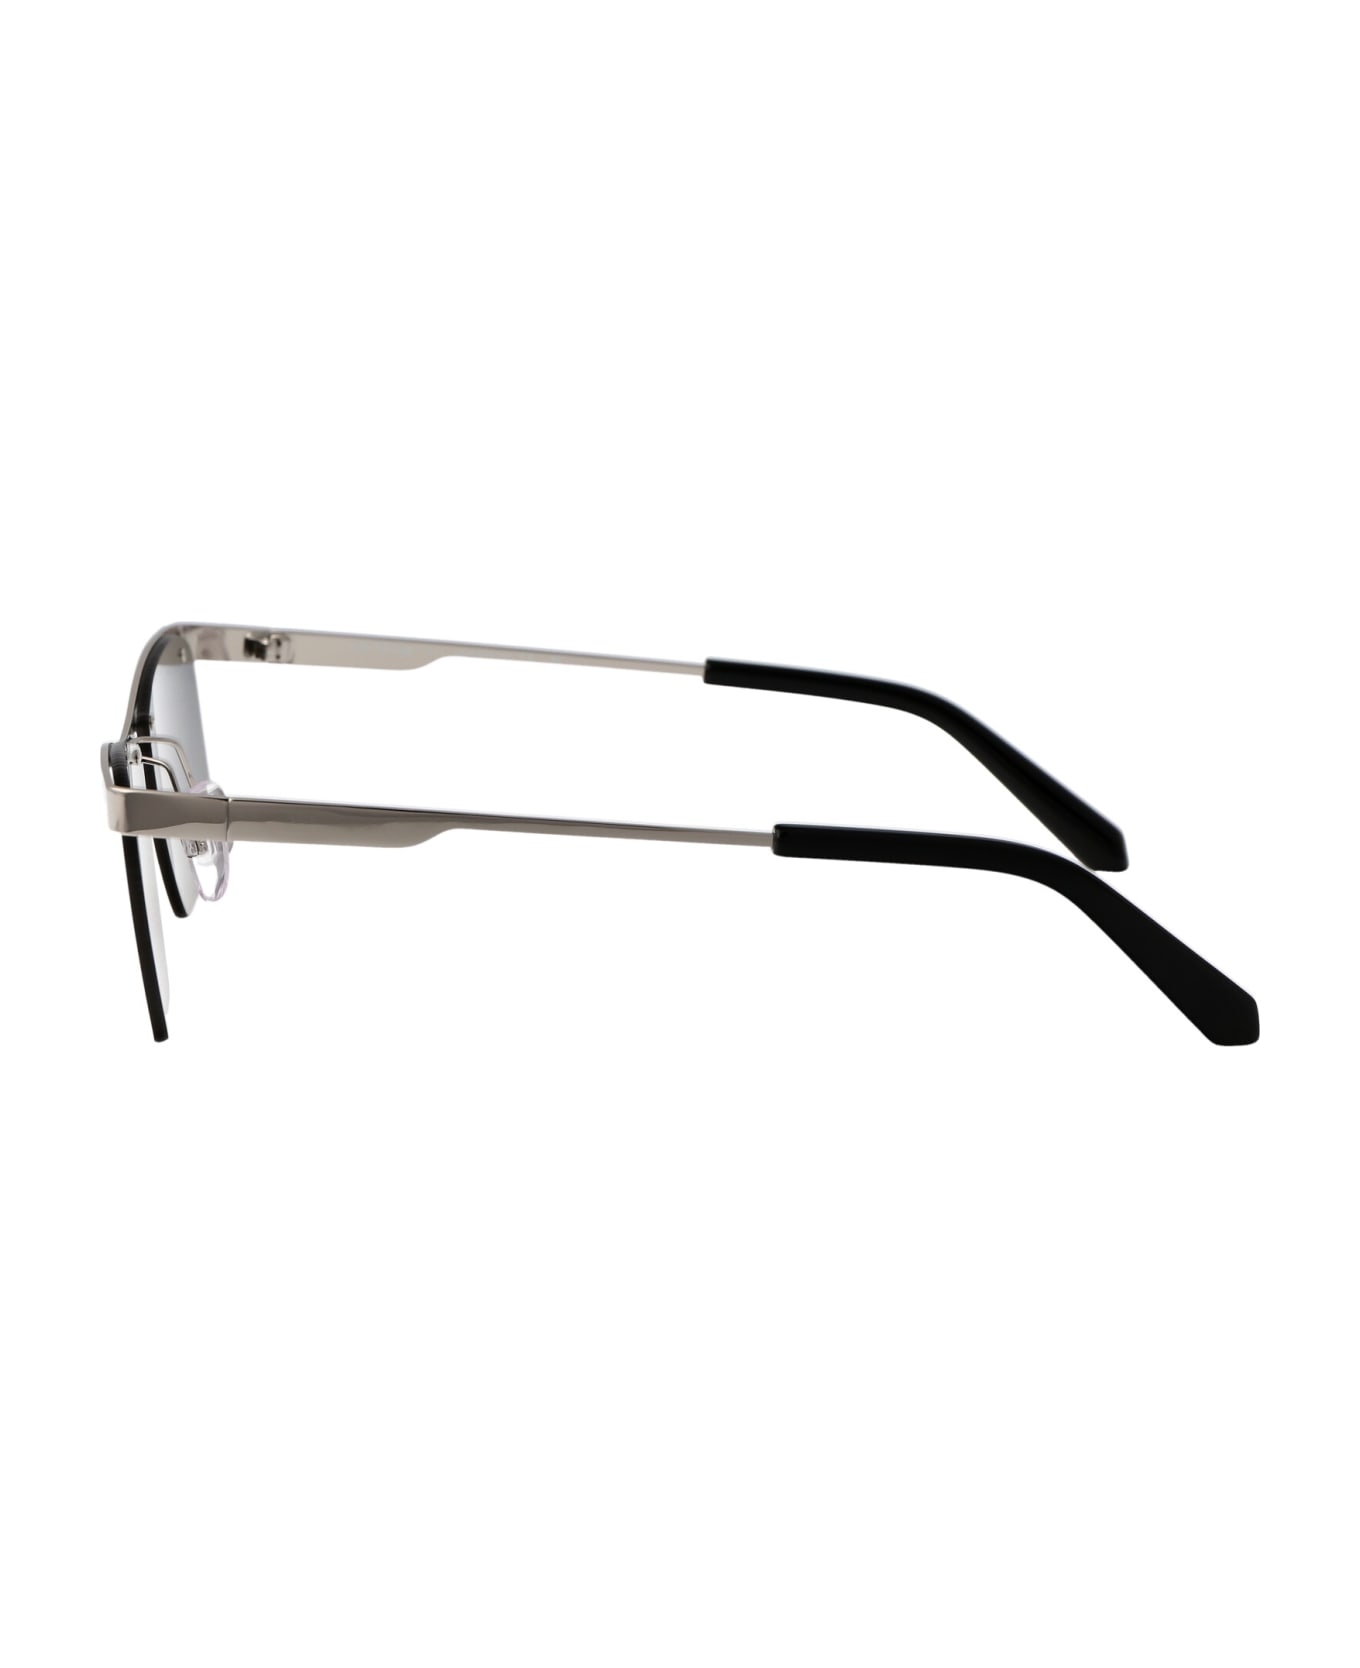 Off-White Rimini Sunglasses - 7272 SILVER サングラス